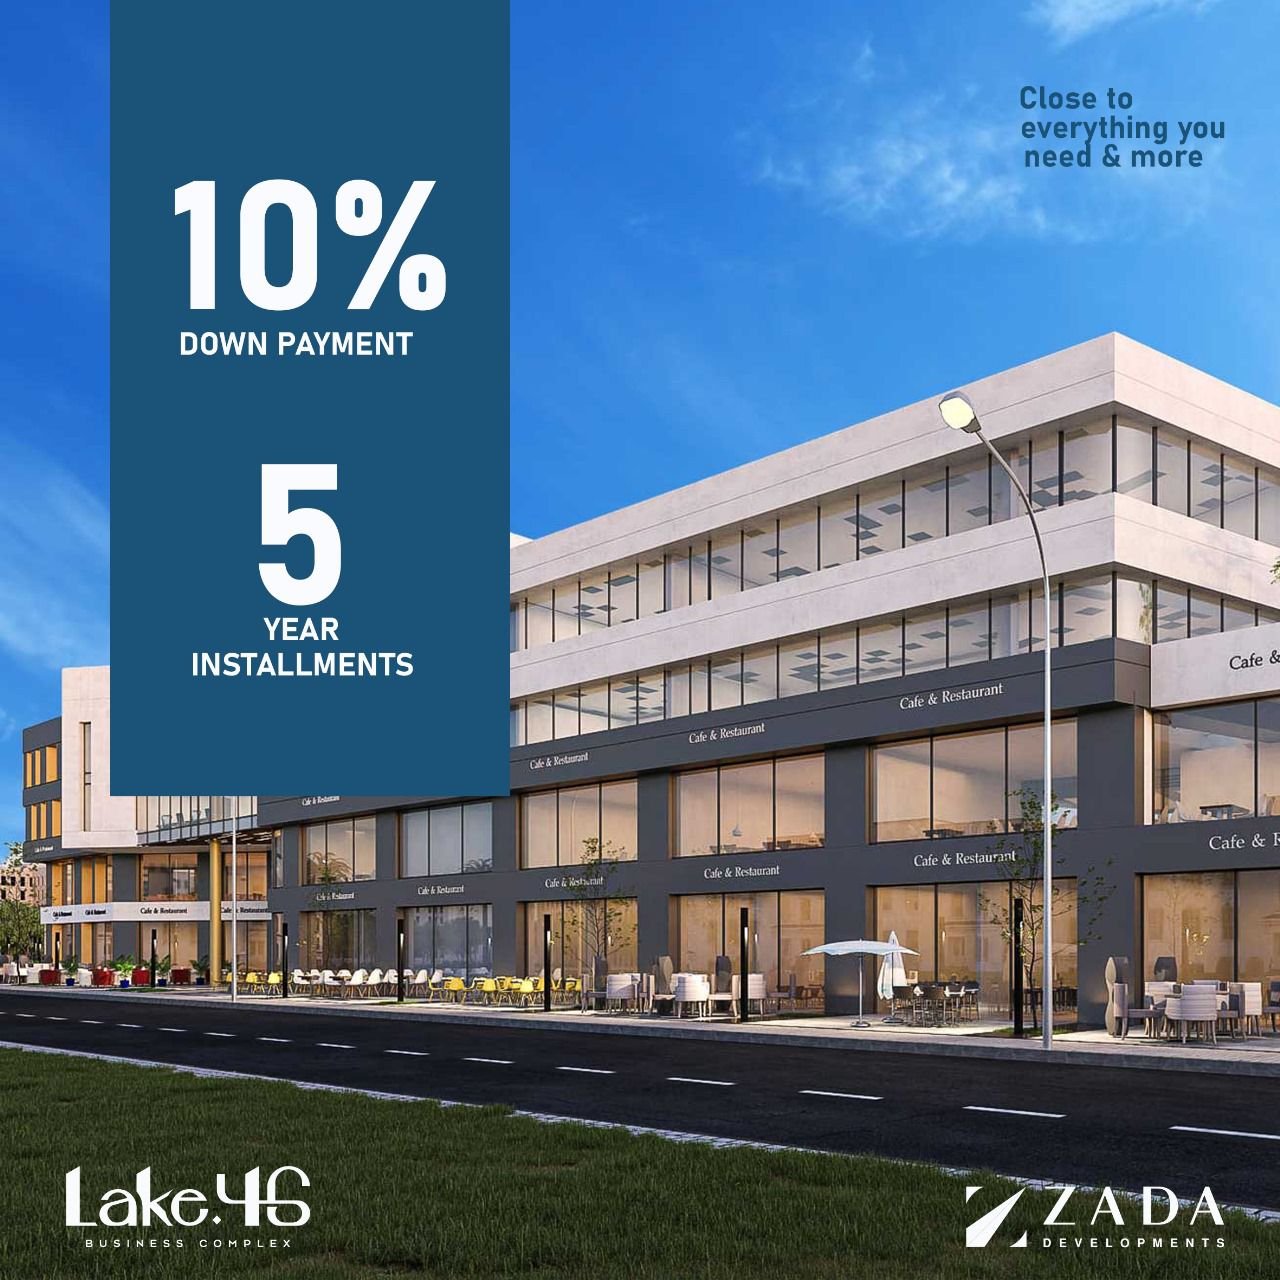 مكتب للبيع بالتقسيط في مدينة 6 أكتوبر مساحة 48 متر بمقدم 25 % و تقسيط يصل إلي 5 سنوات في مول  LAKE 46 Mall | THE PEAK PROPERTIES